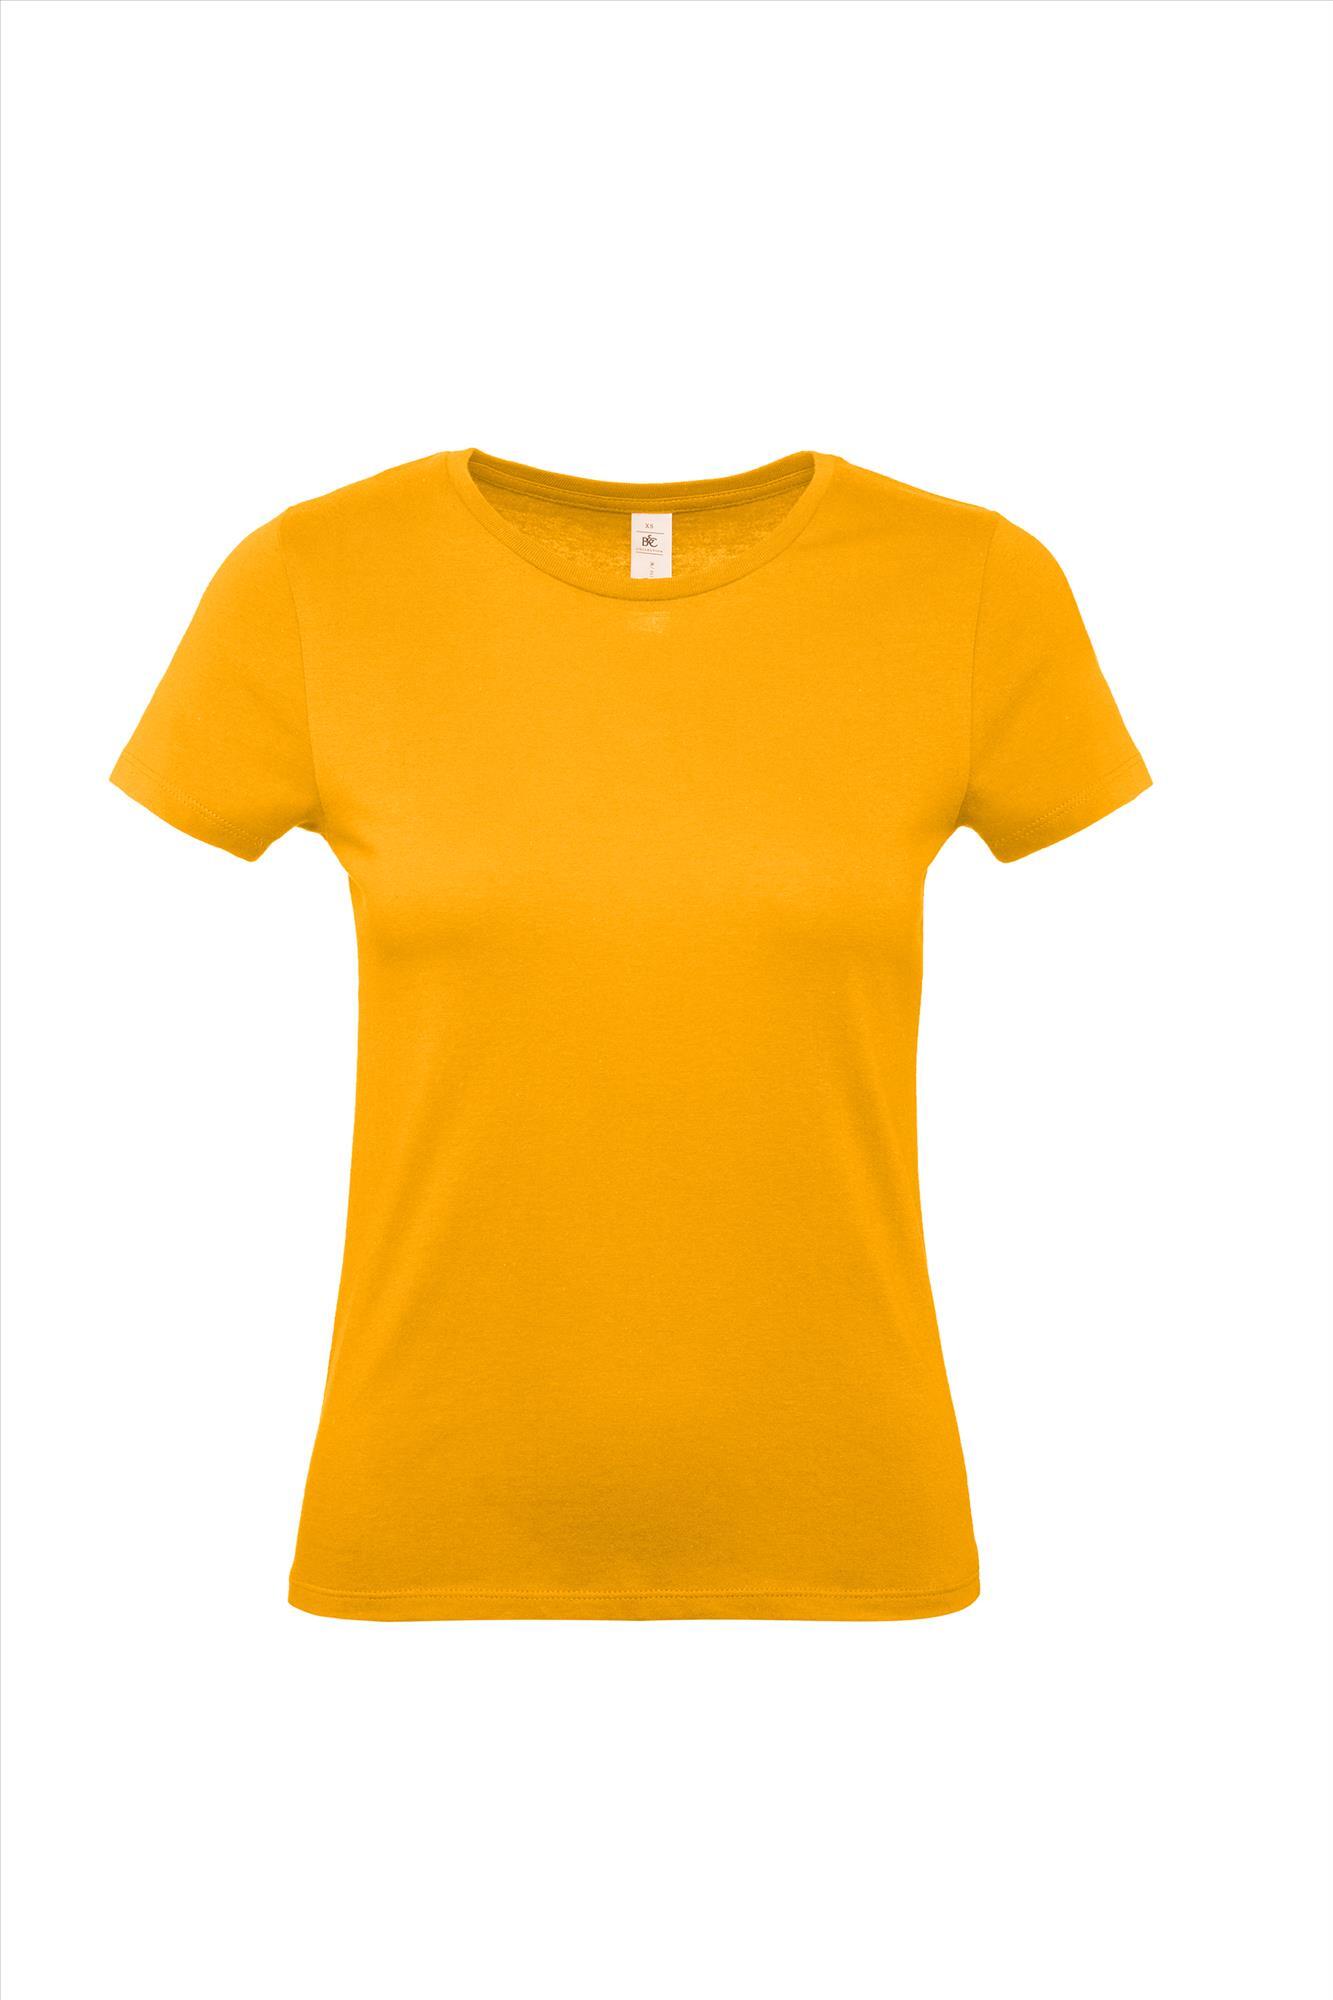 Modern T-shirt voor haar dames shirt abrikoos kleur